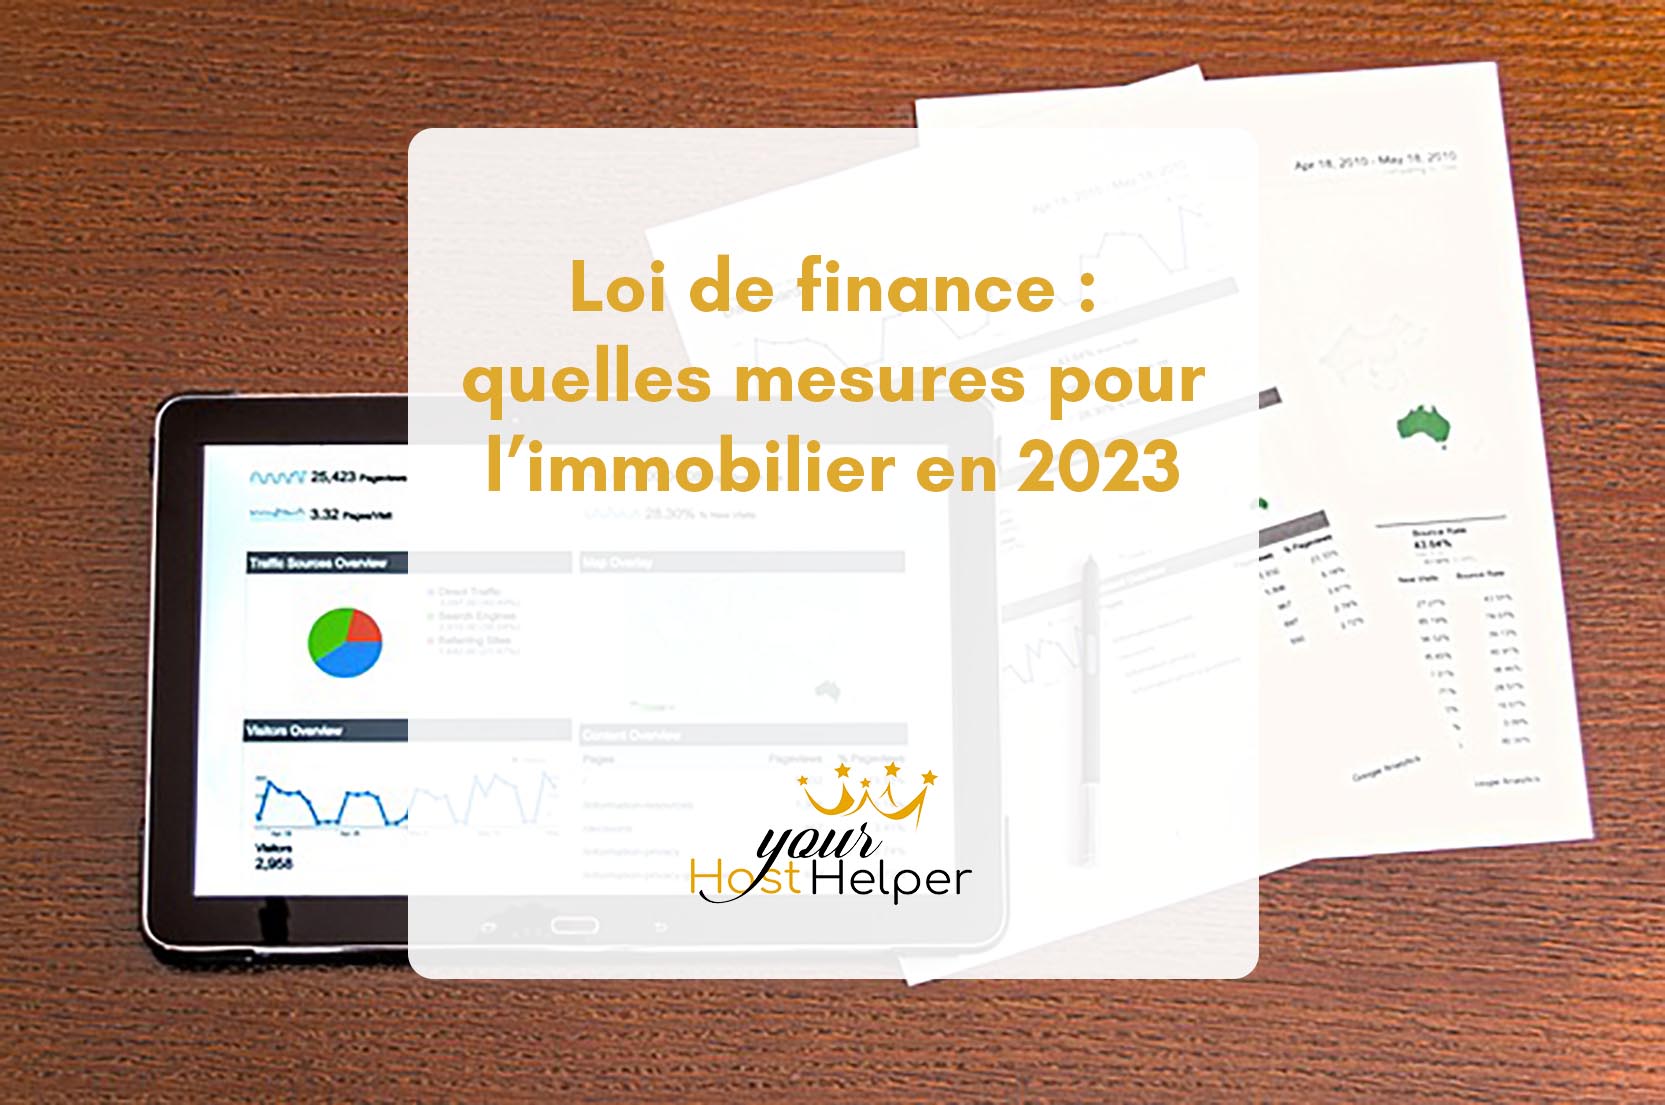 Stai visualizzando Spiegazioni dal tuo concierge La Rochelle sulle misure e gli impatti della legge finanziaria 2023